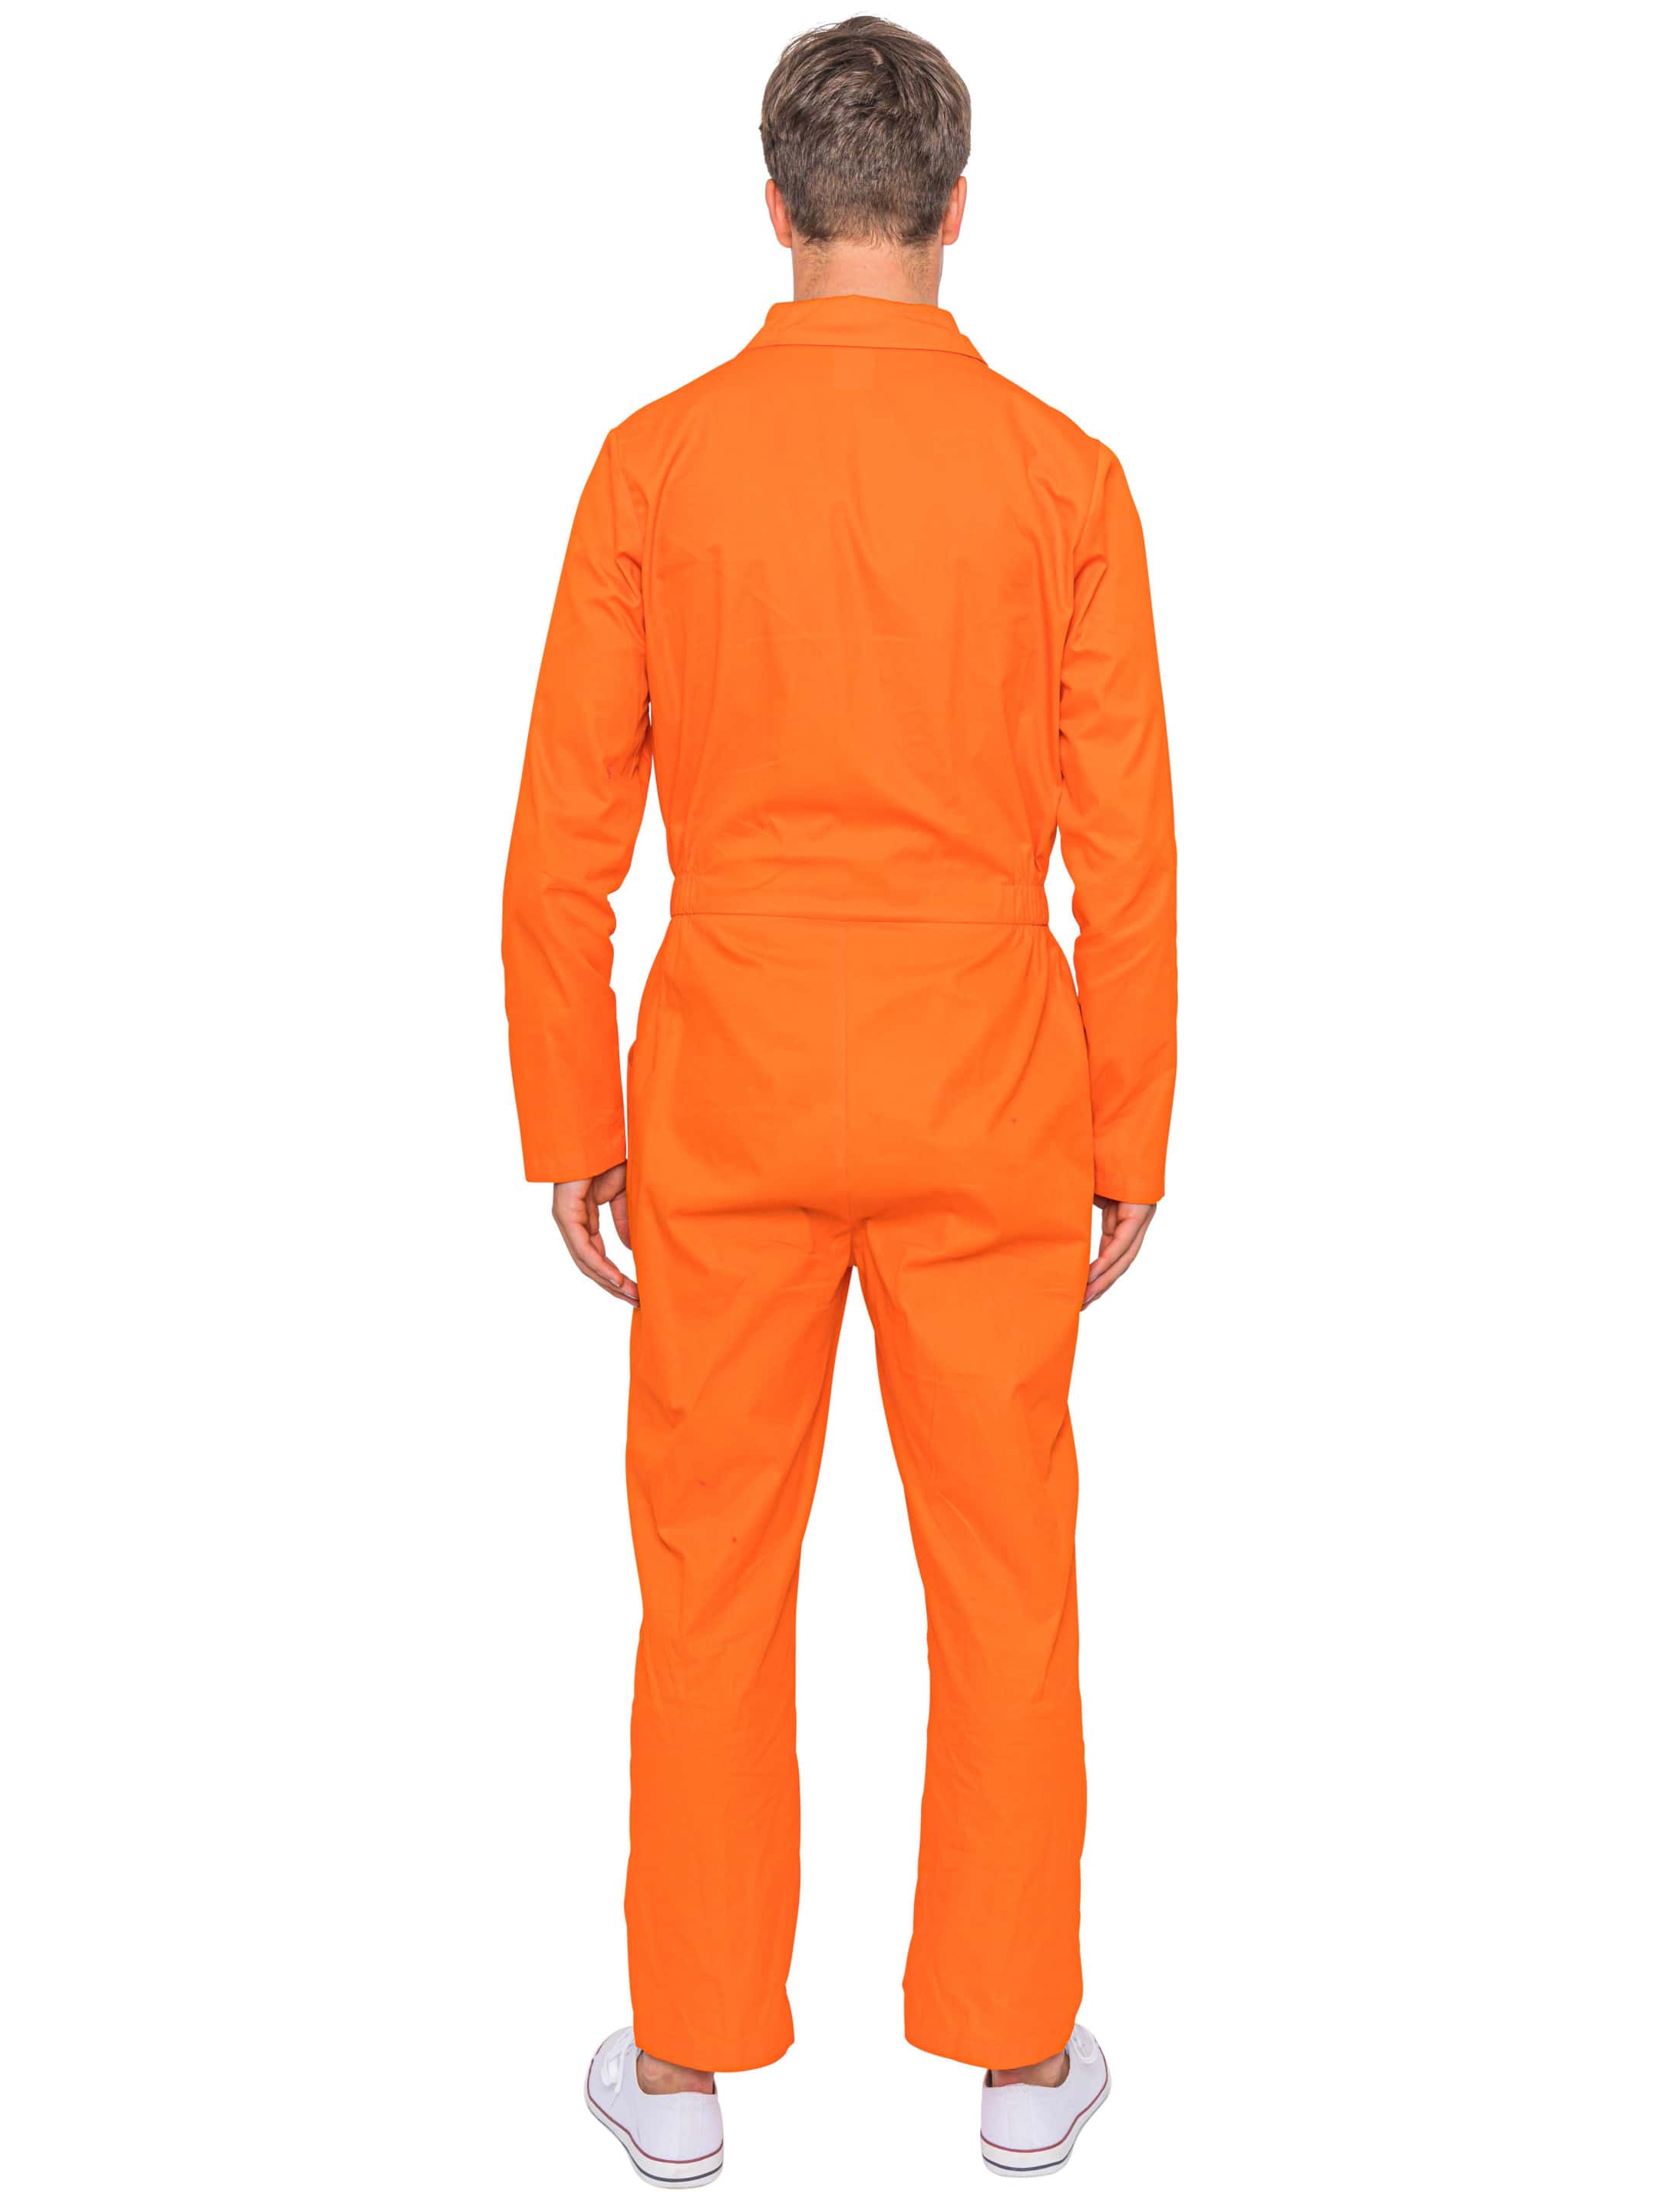 Orangener Gefängnis Overall HIER kaufen » Deiters